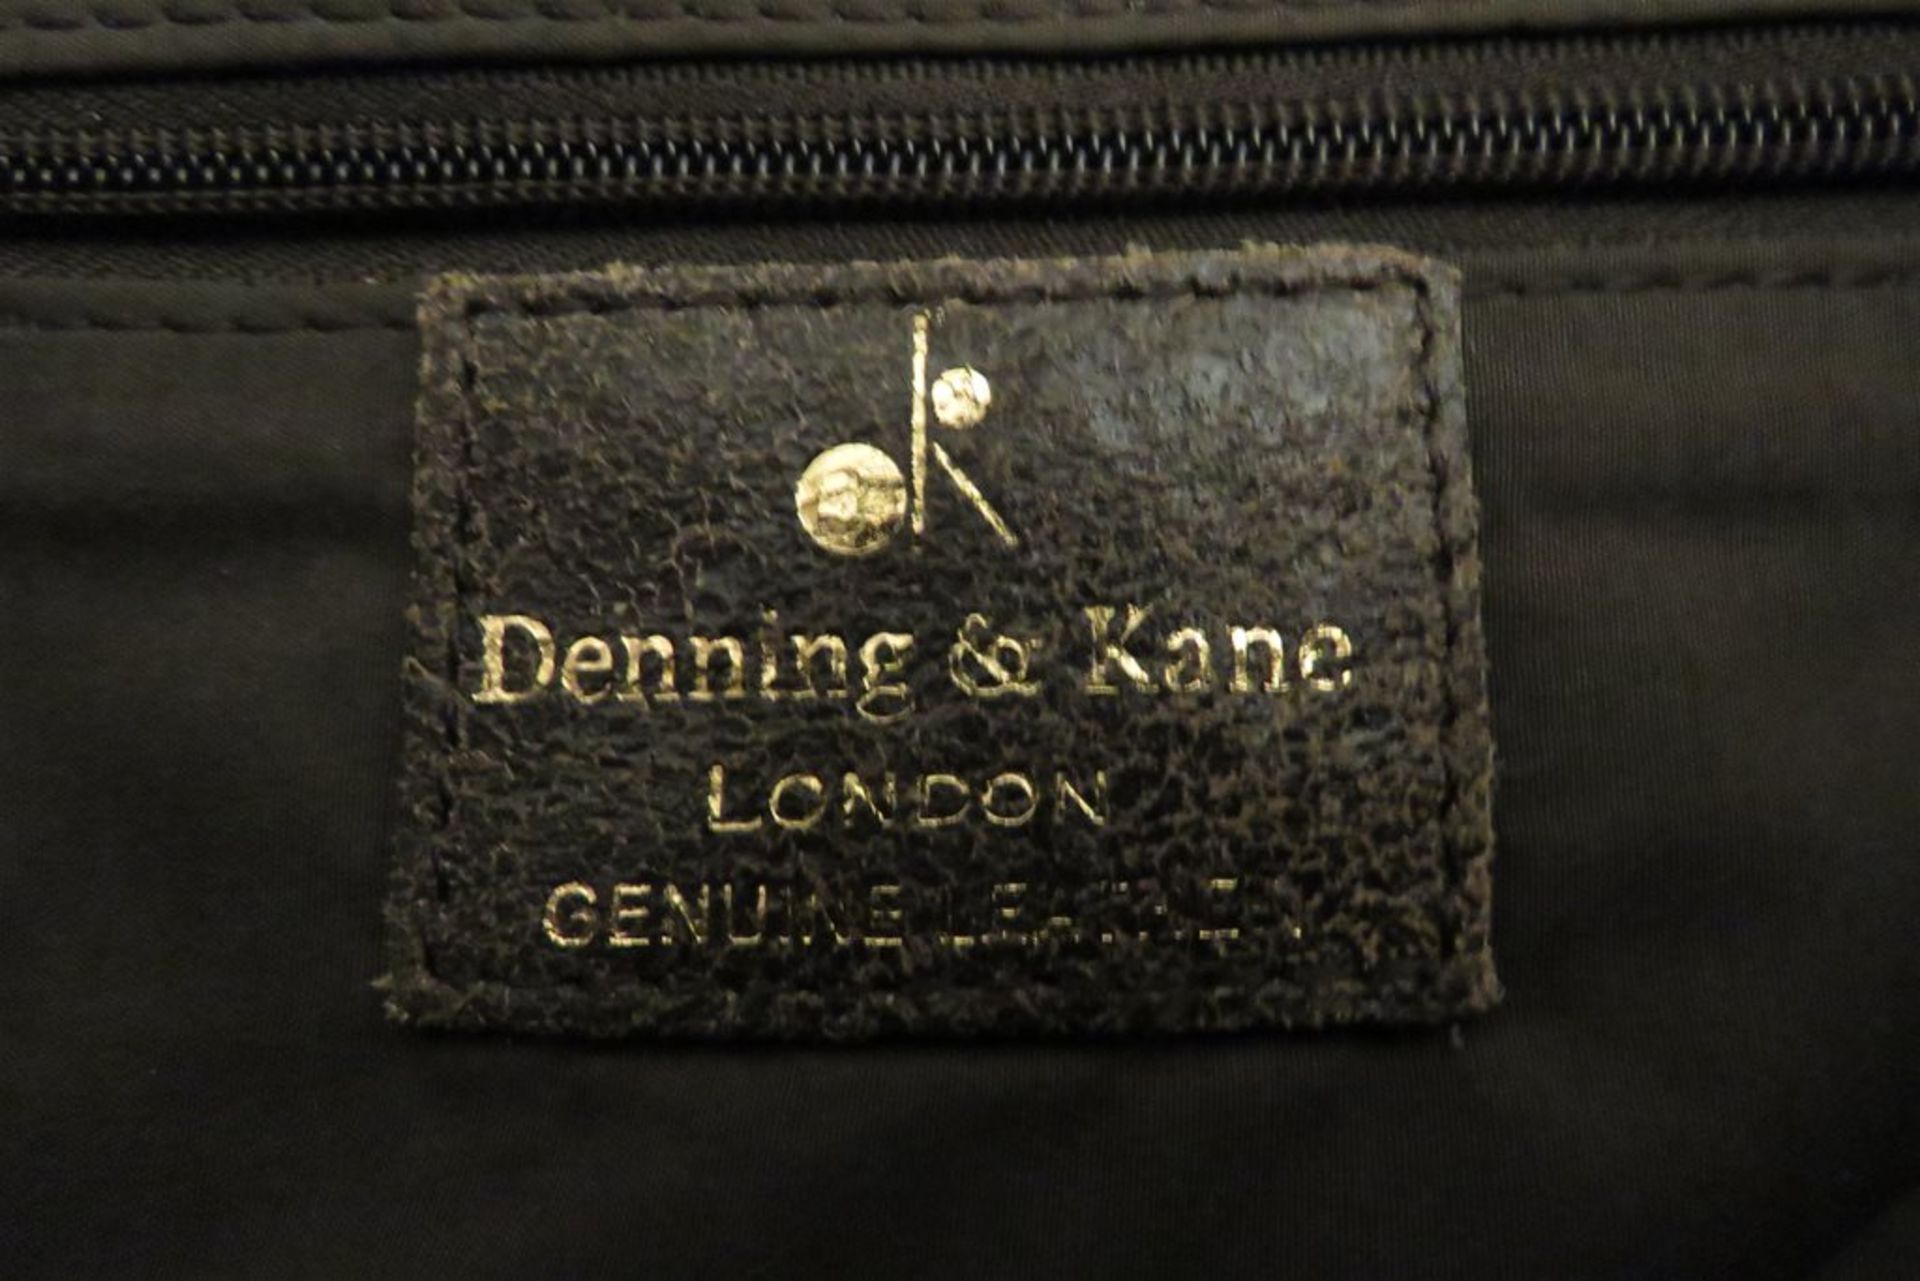 Denning & Kane - Genuine Distressed Brown Leather Satchel Bag - Image 2 of 2